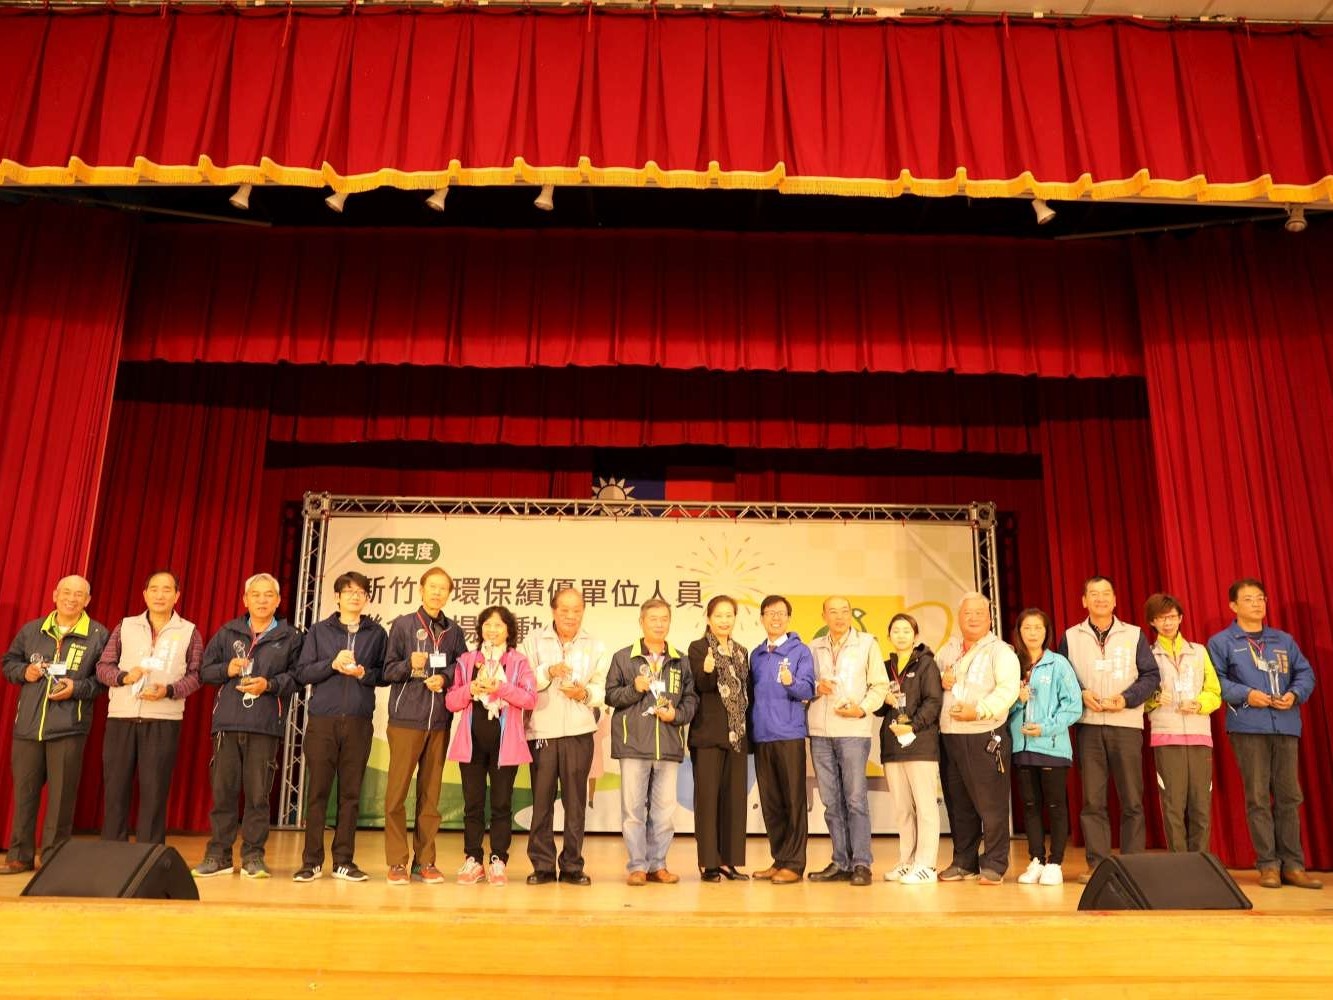 竹市表揚109年度環保績優單位、個人 9旬志工嬤7年全勤守護環境大圖